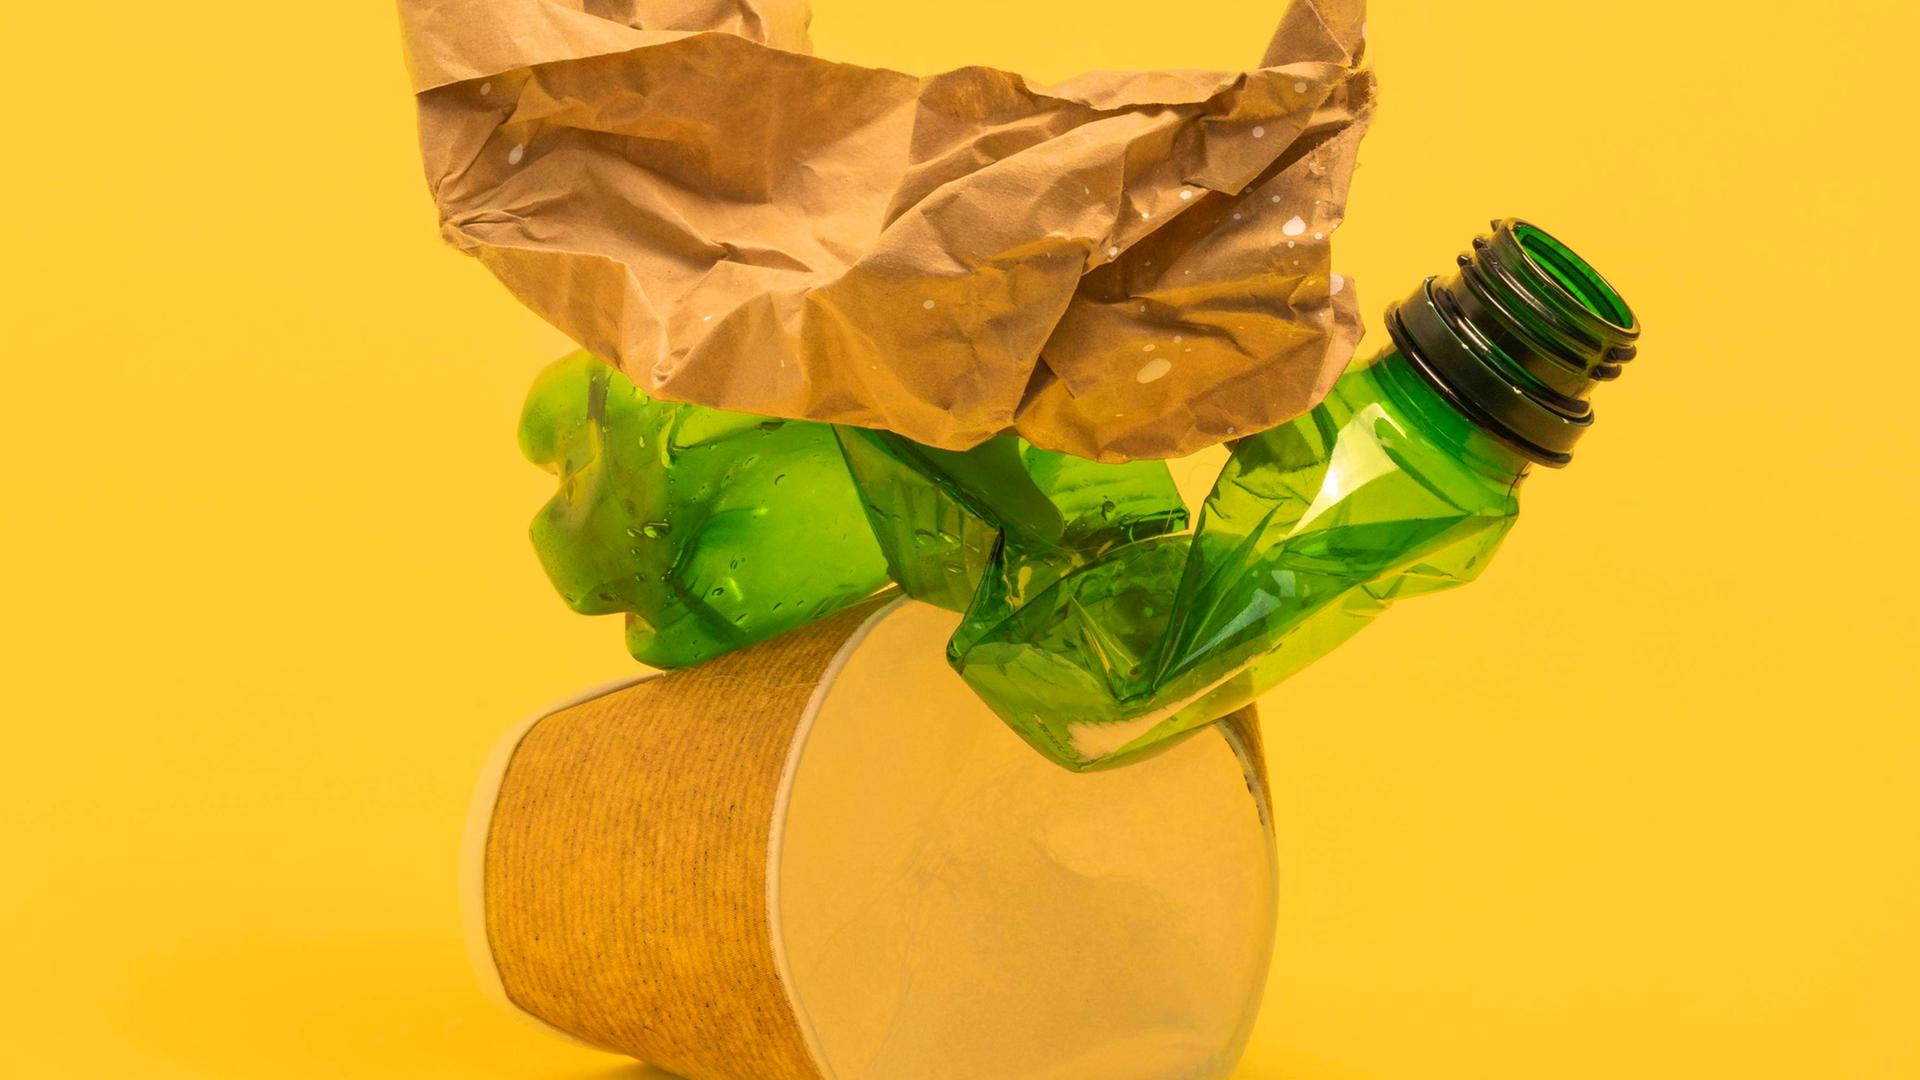 Studioaufnahme von schwer zu recycelnden Kunststoffverpackungen wie Kaffebecher und folierte Verpackungen vor gelbem Hintergrund.